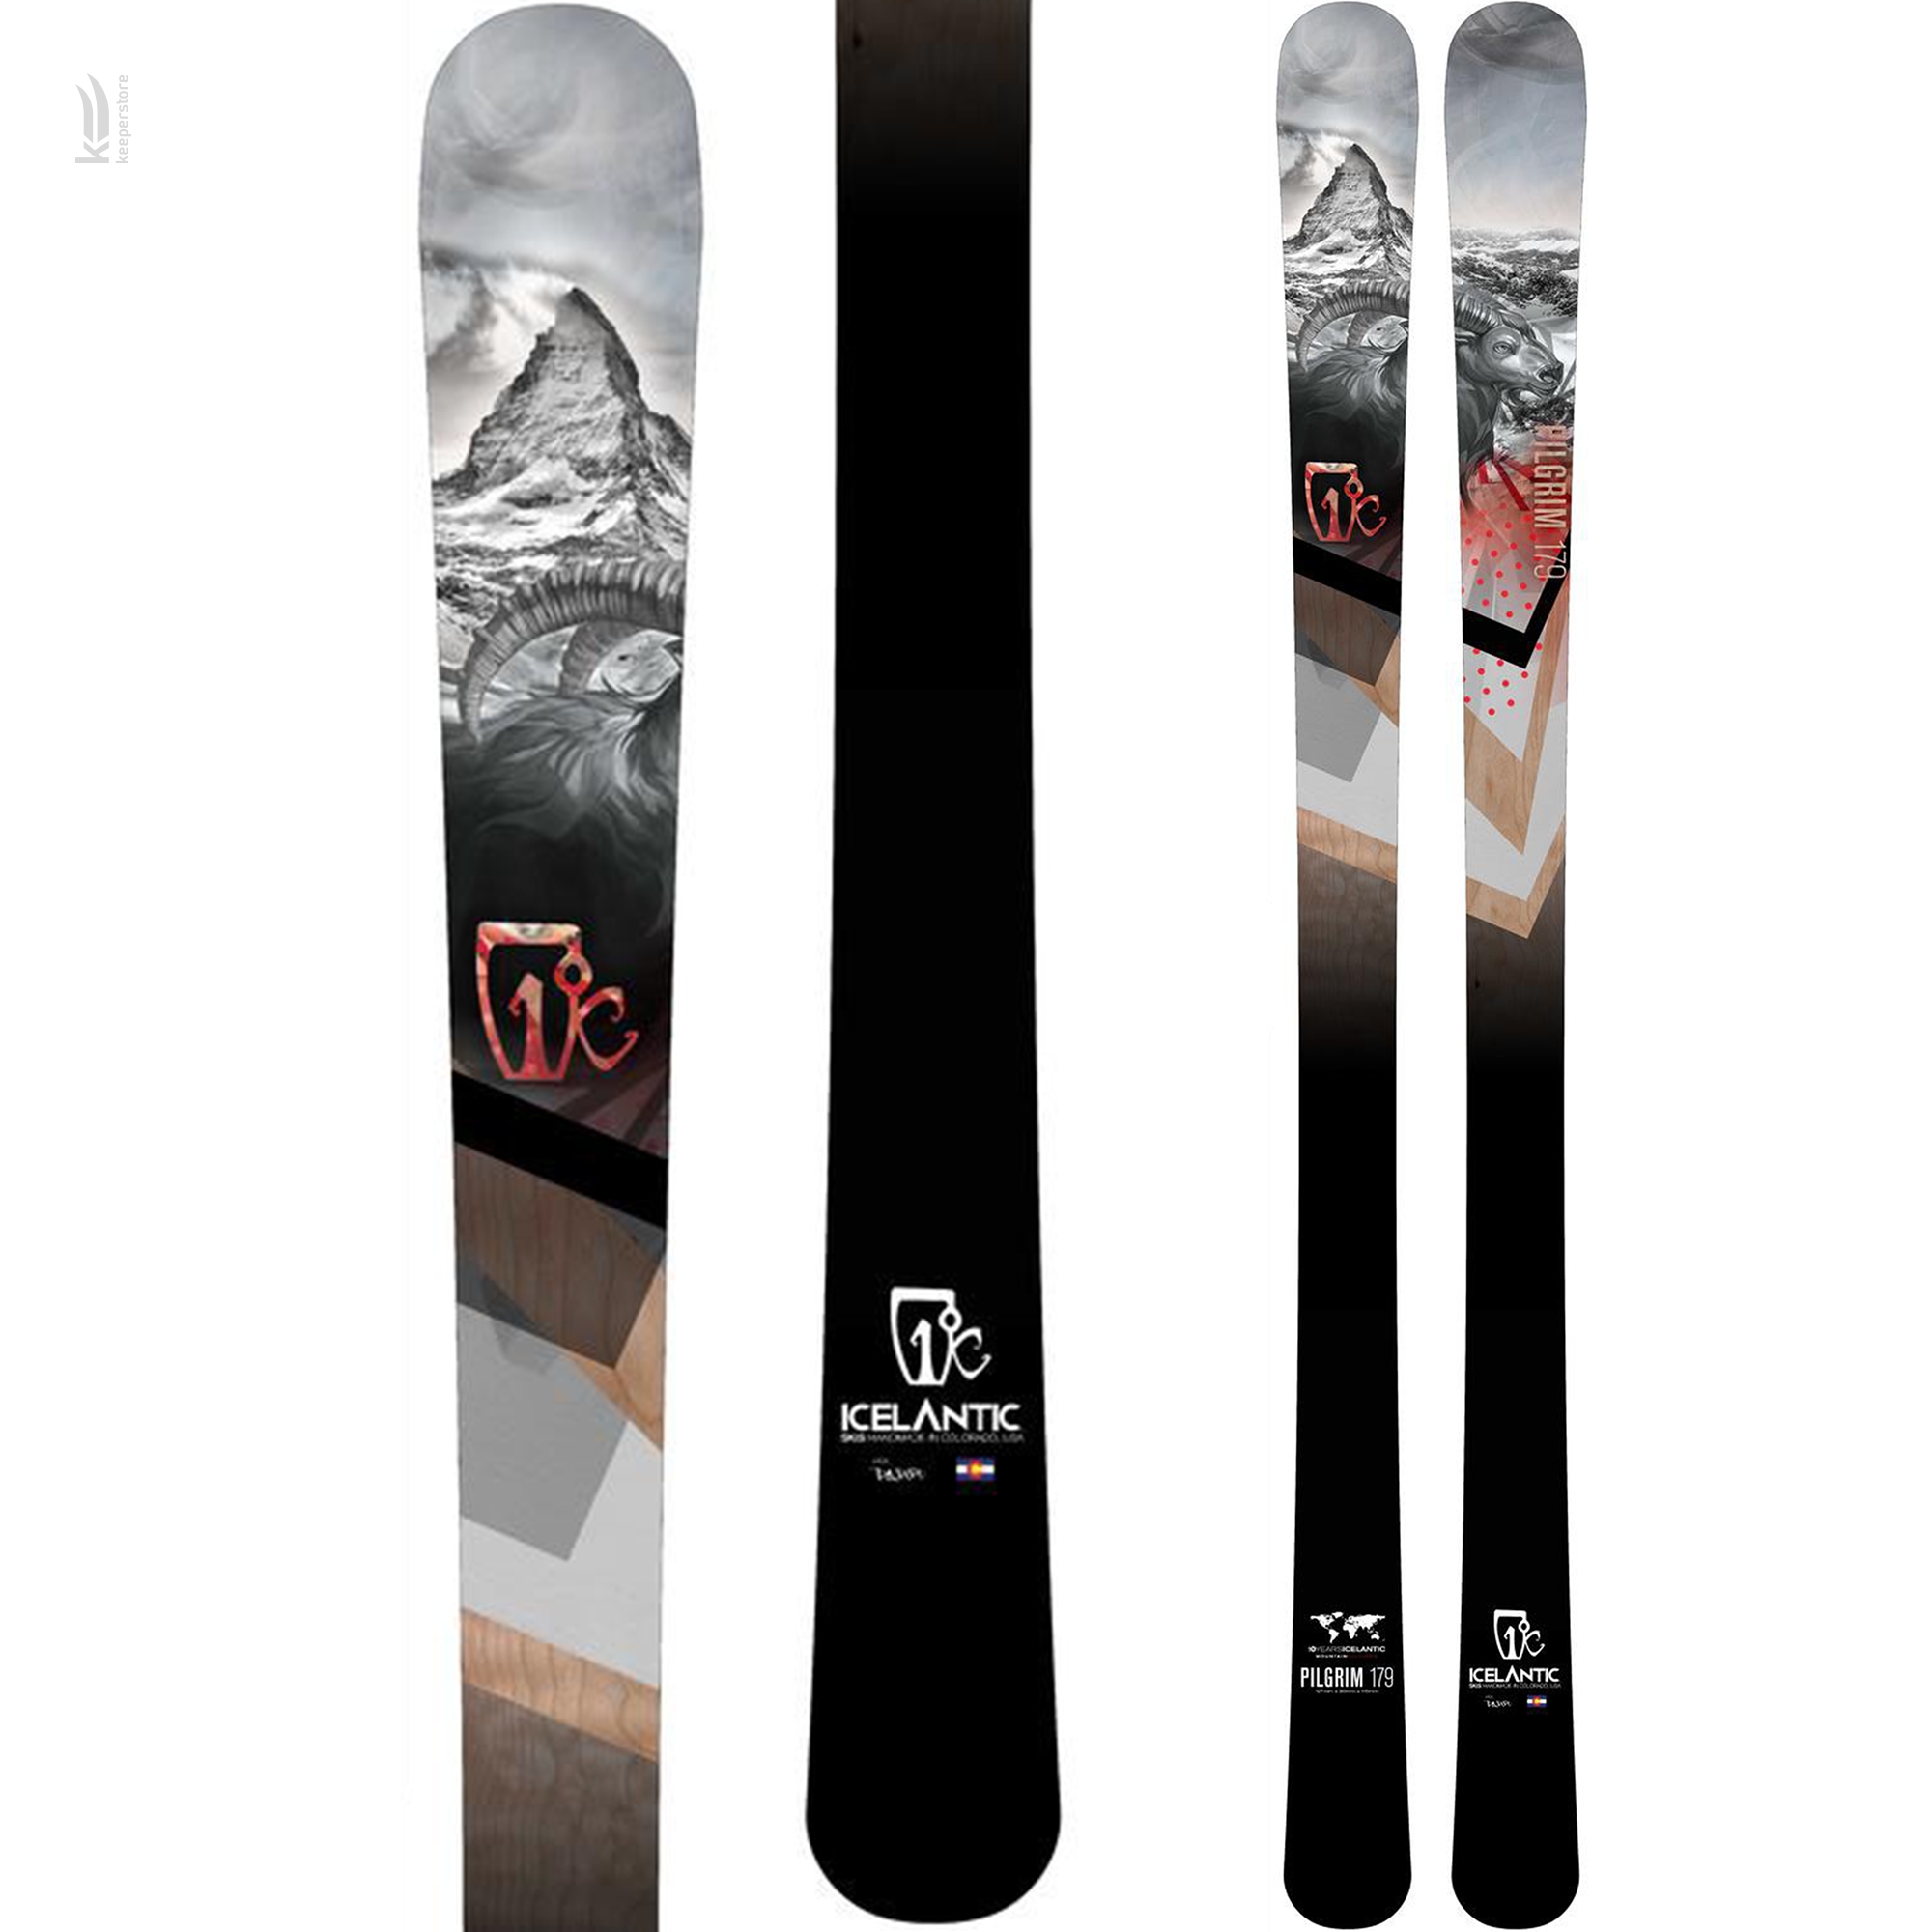 Универсальные лыжи Icelantic Pilgrim 90 2015/2016 169cm